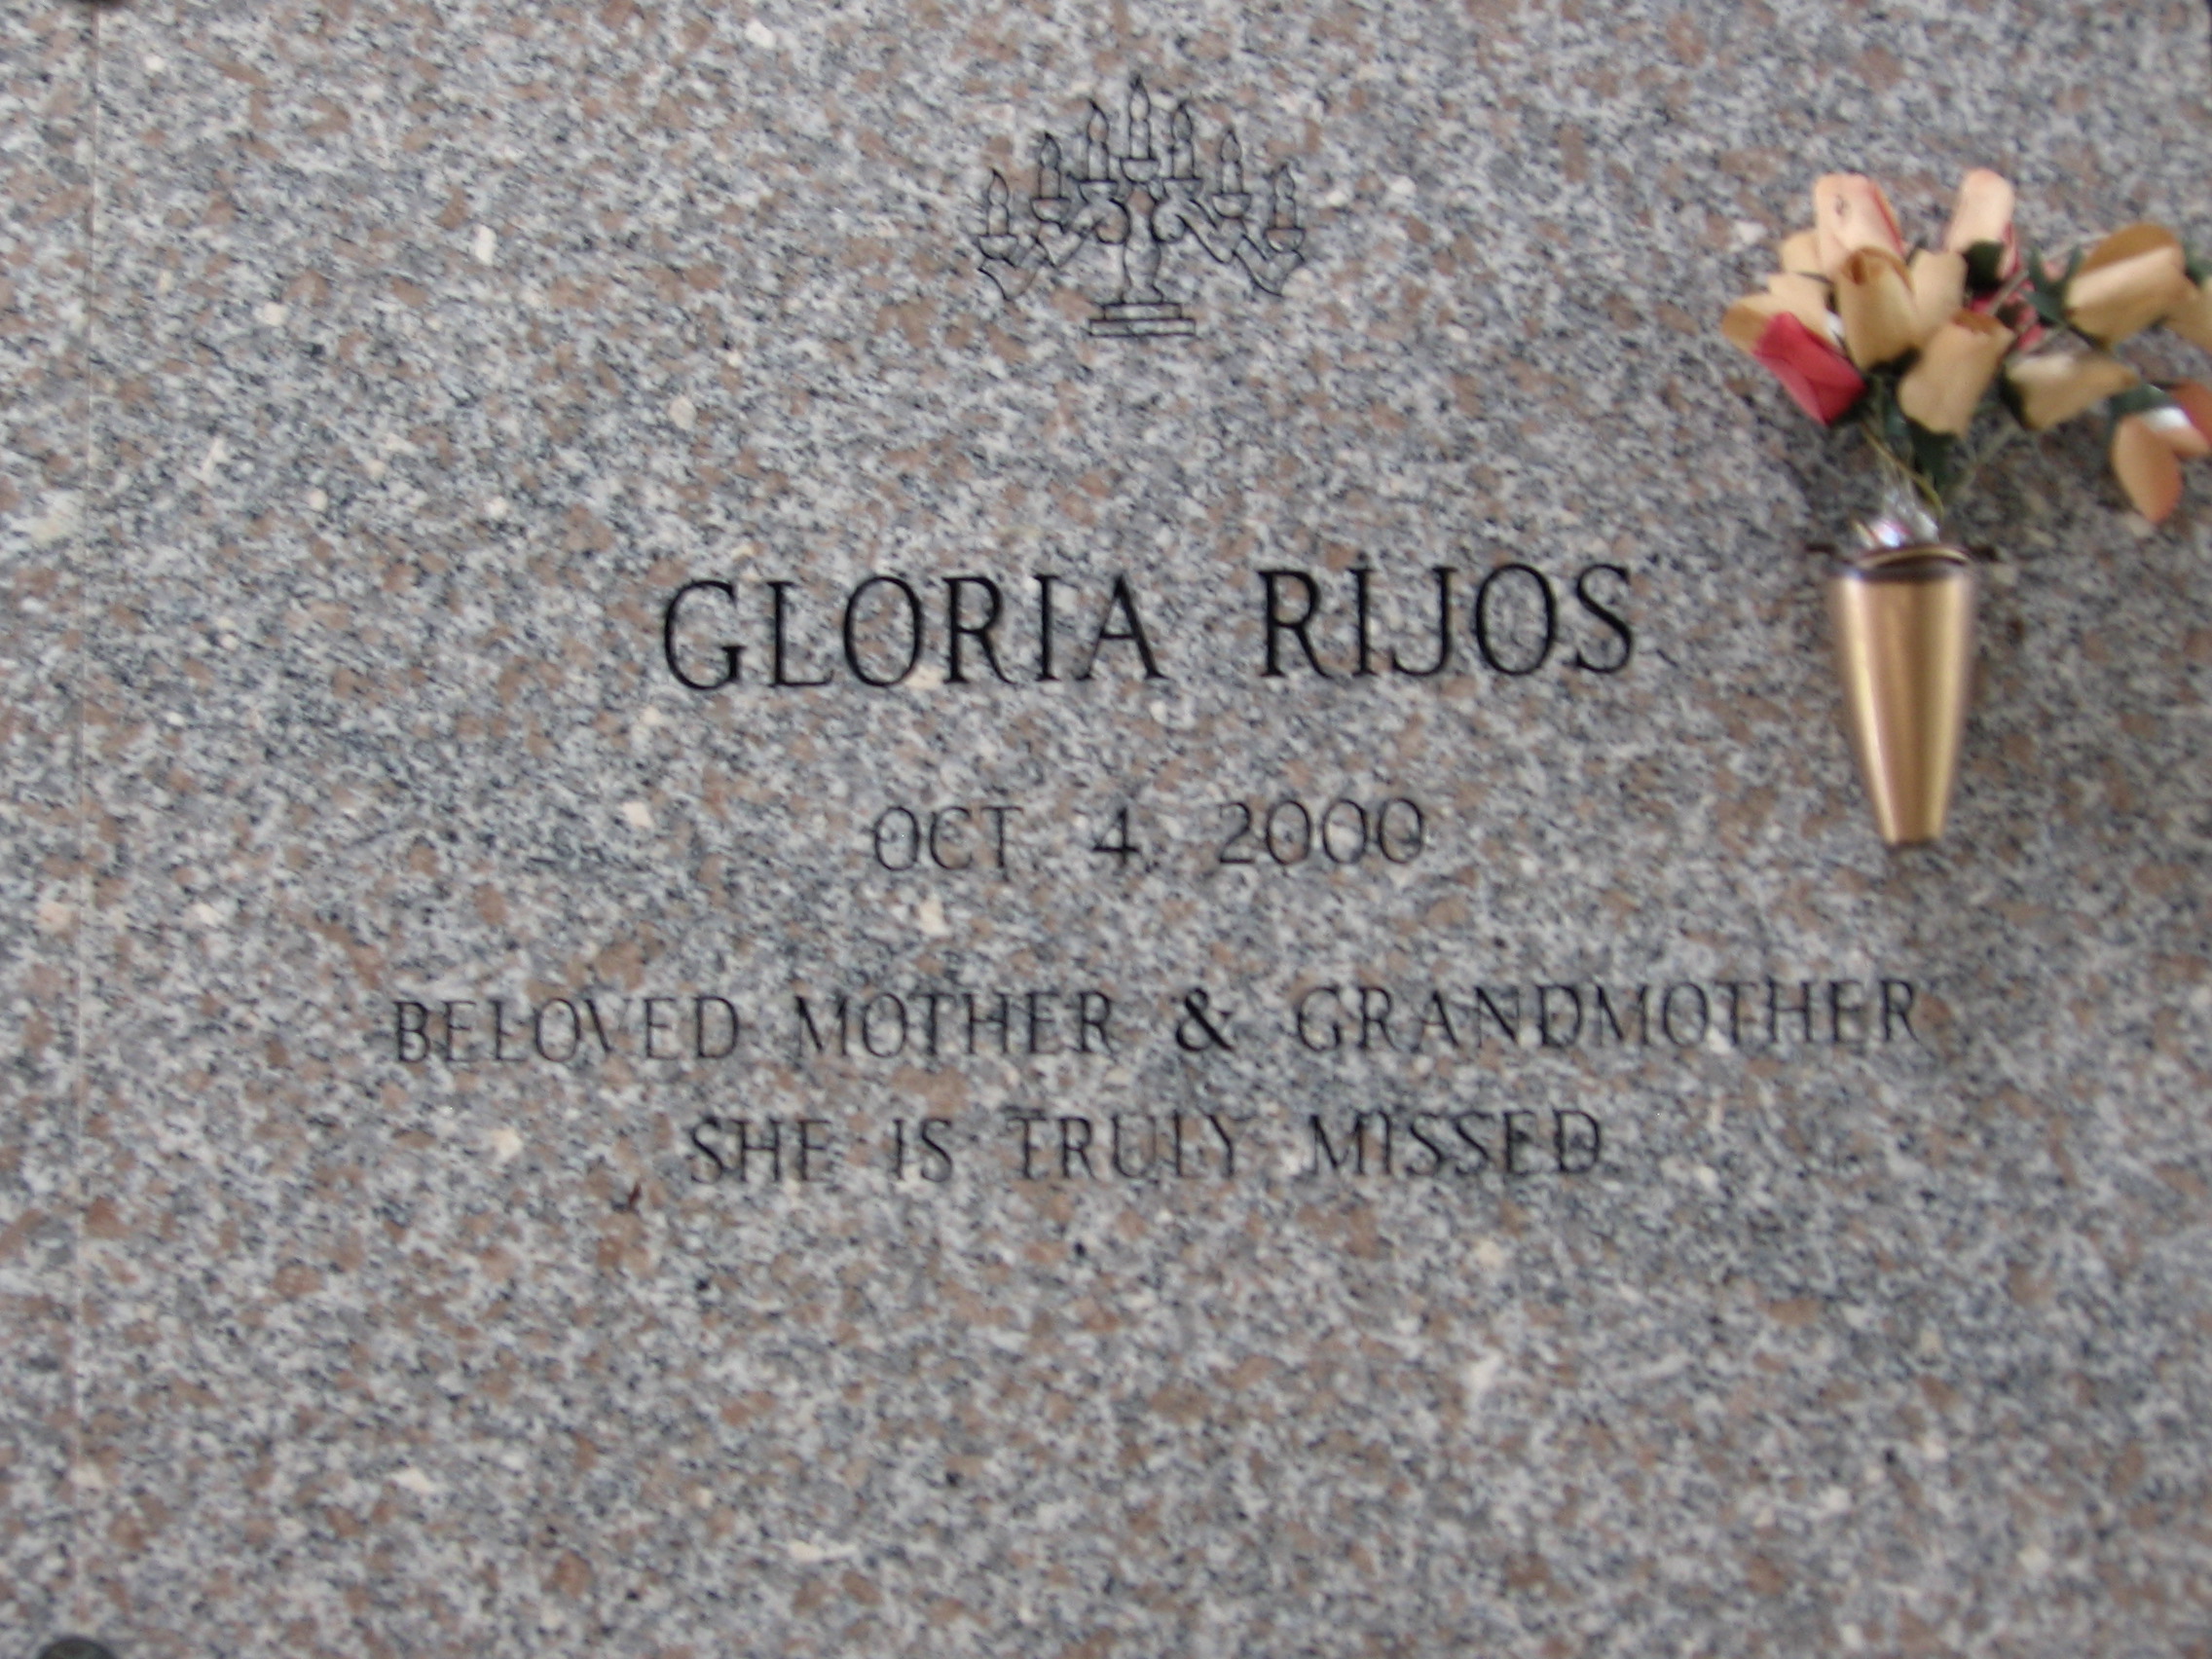 Gloria Rijos